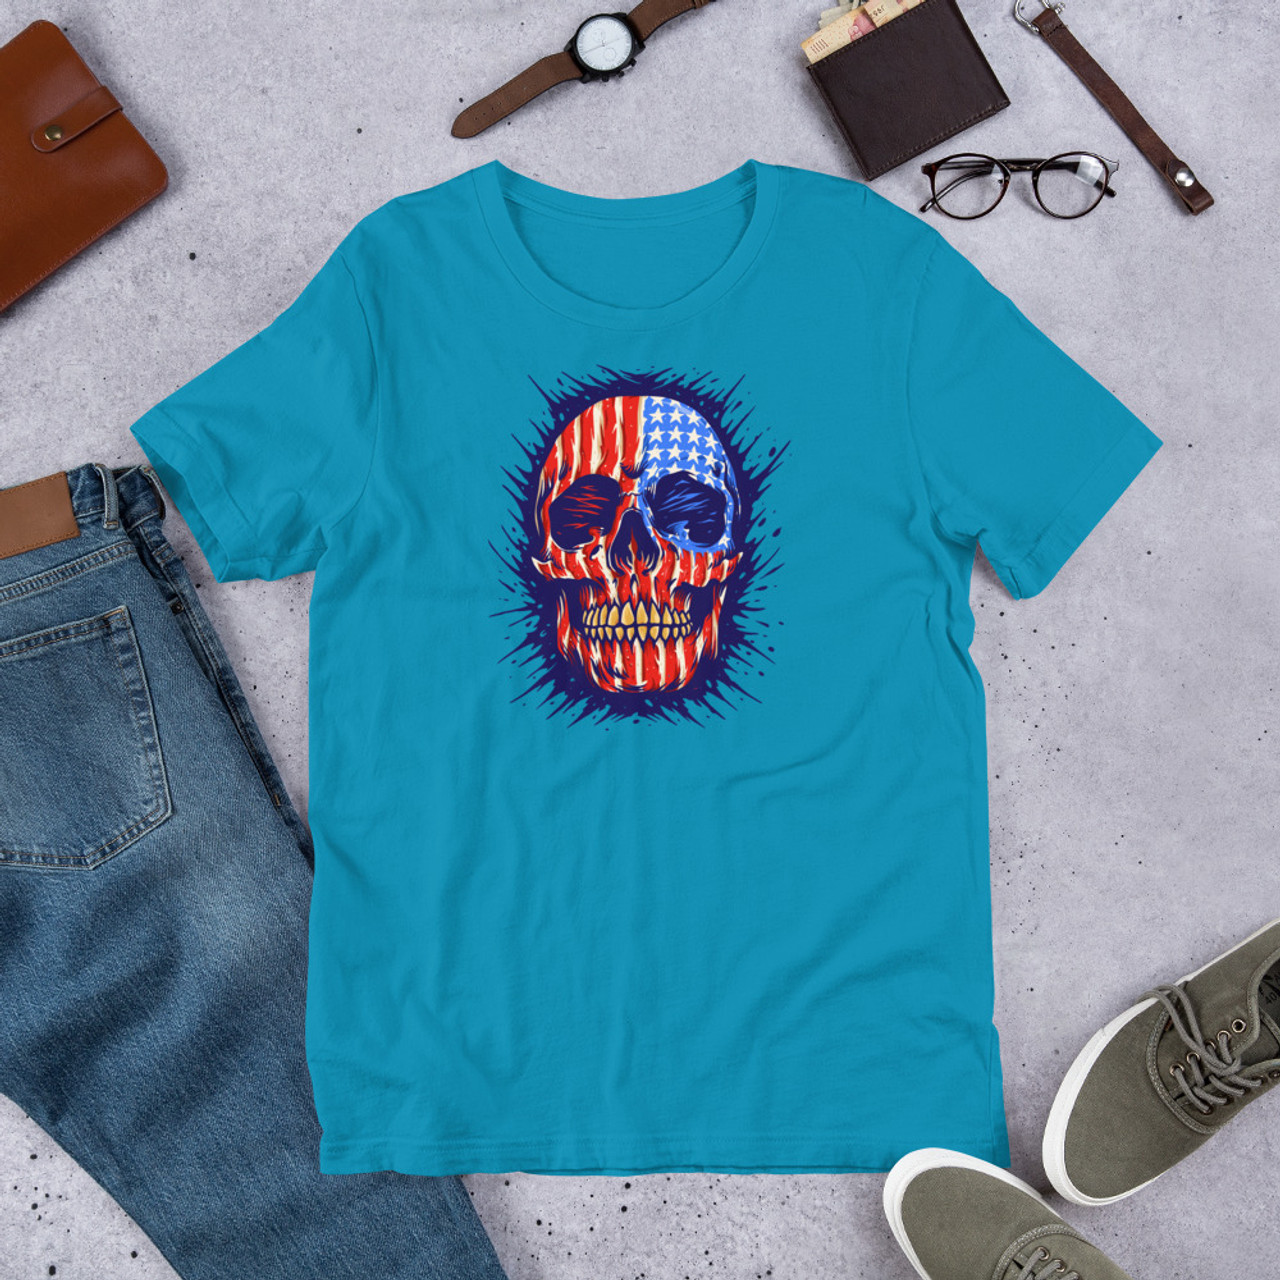 Aqua T-Shirt - Bella + Canvas 3001 American Skull